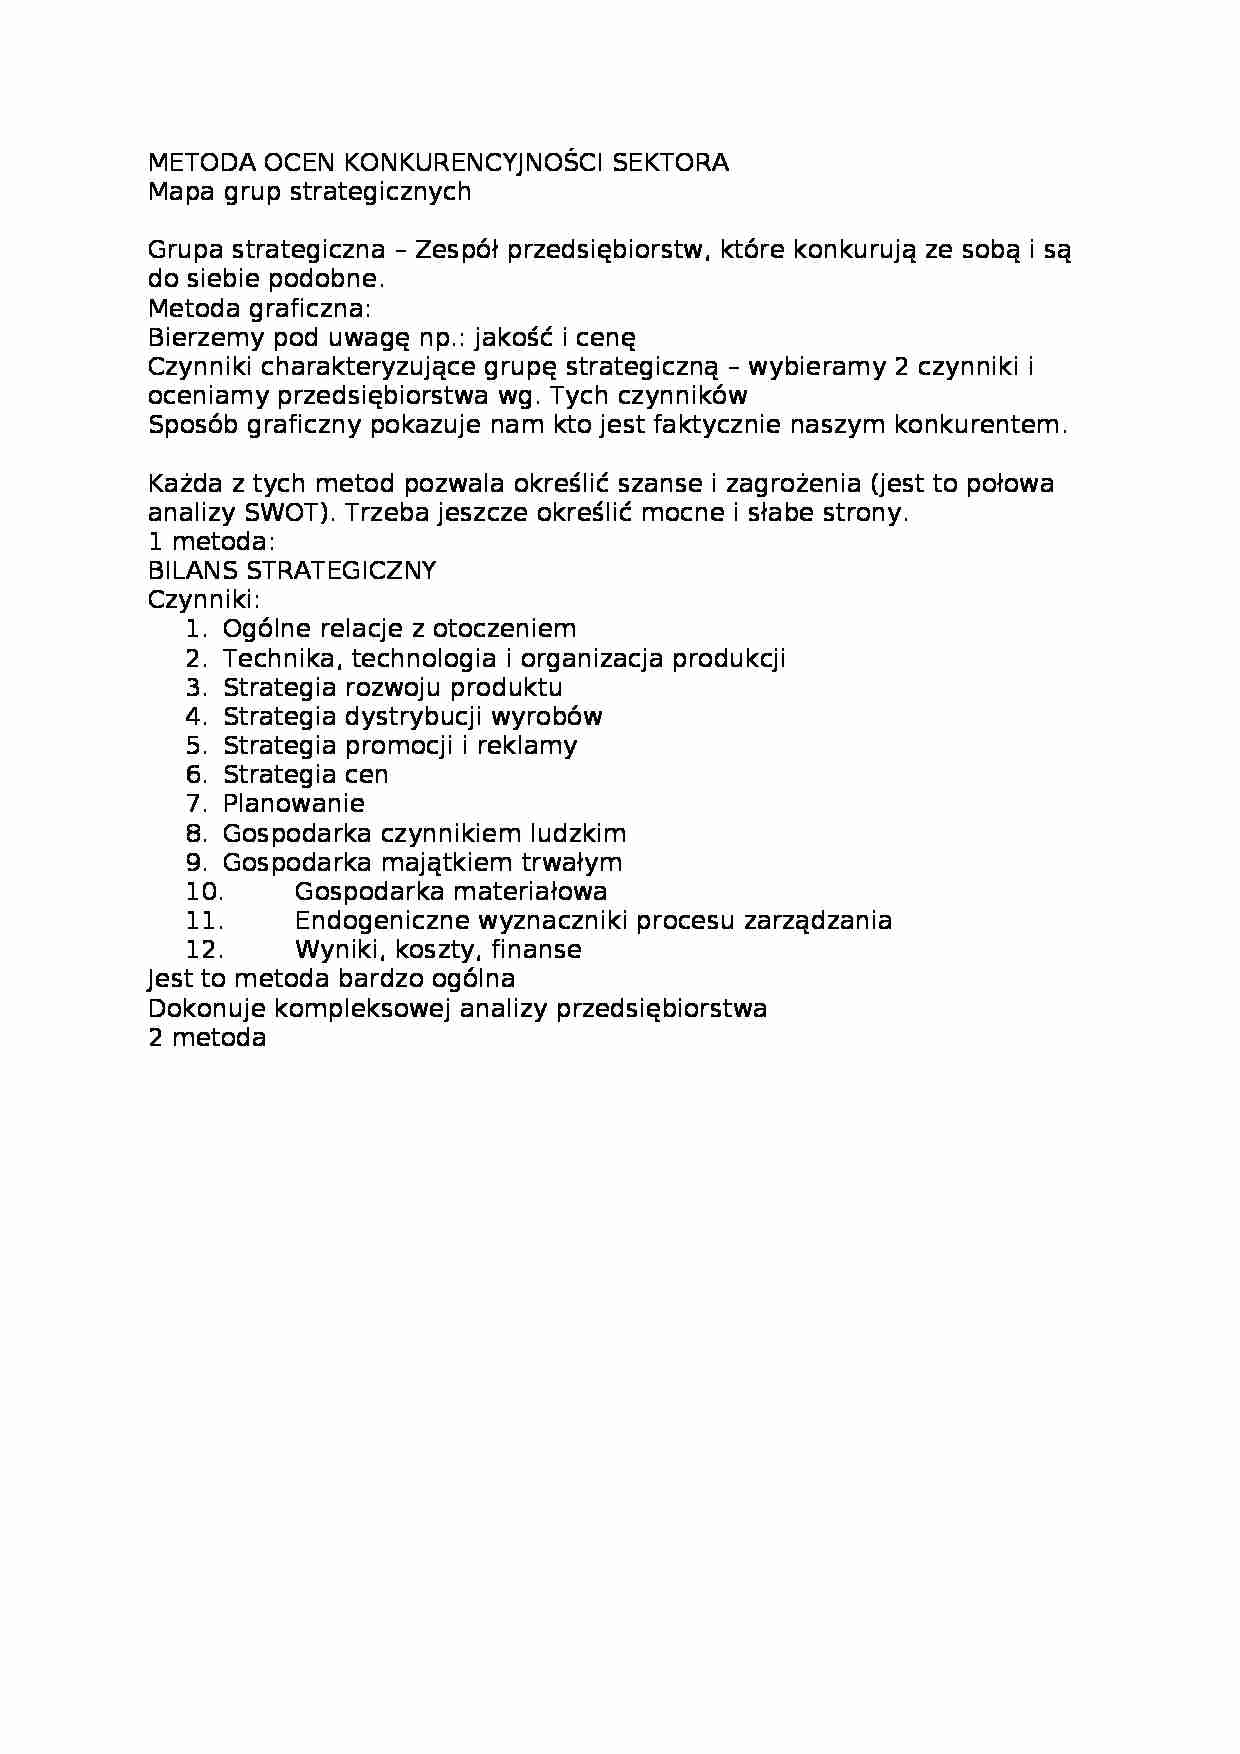 Metoda oceny konkurencyjności sektora-opracowanie - strona 1